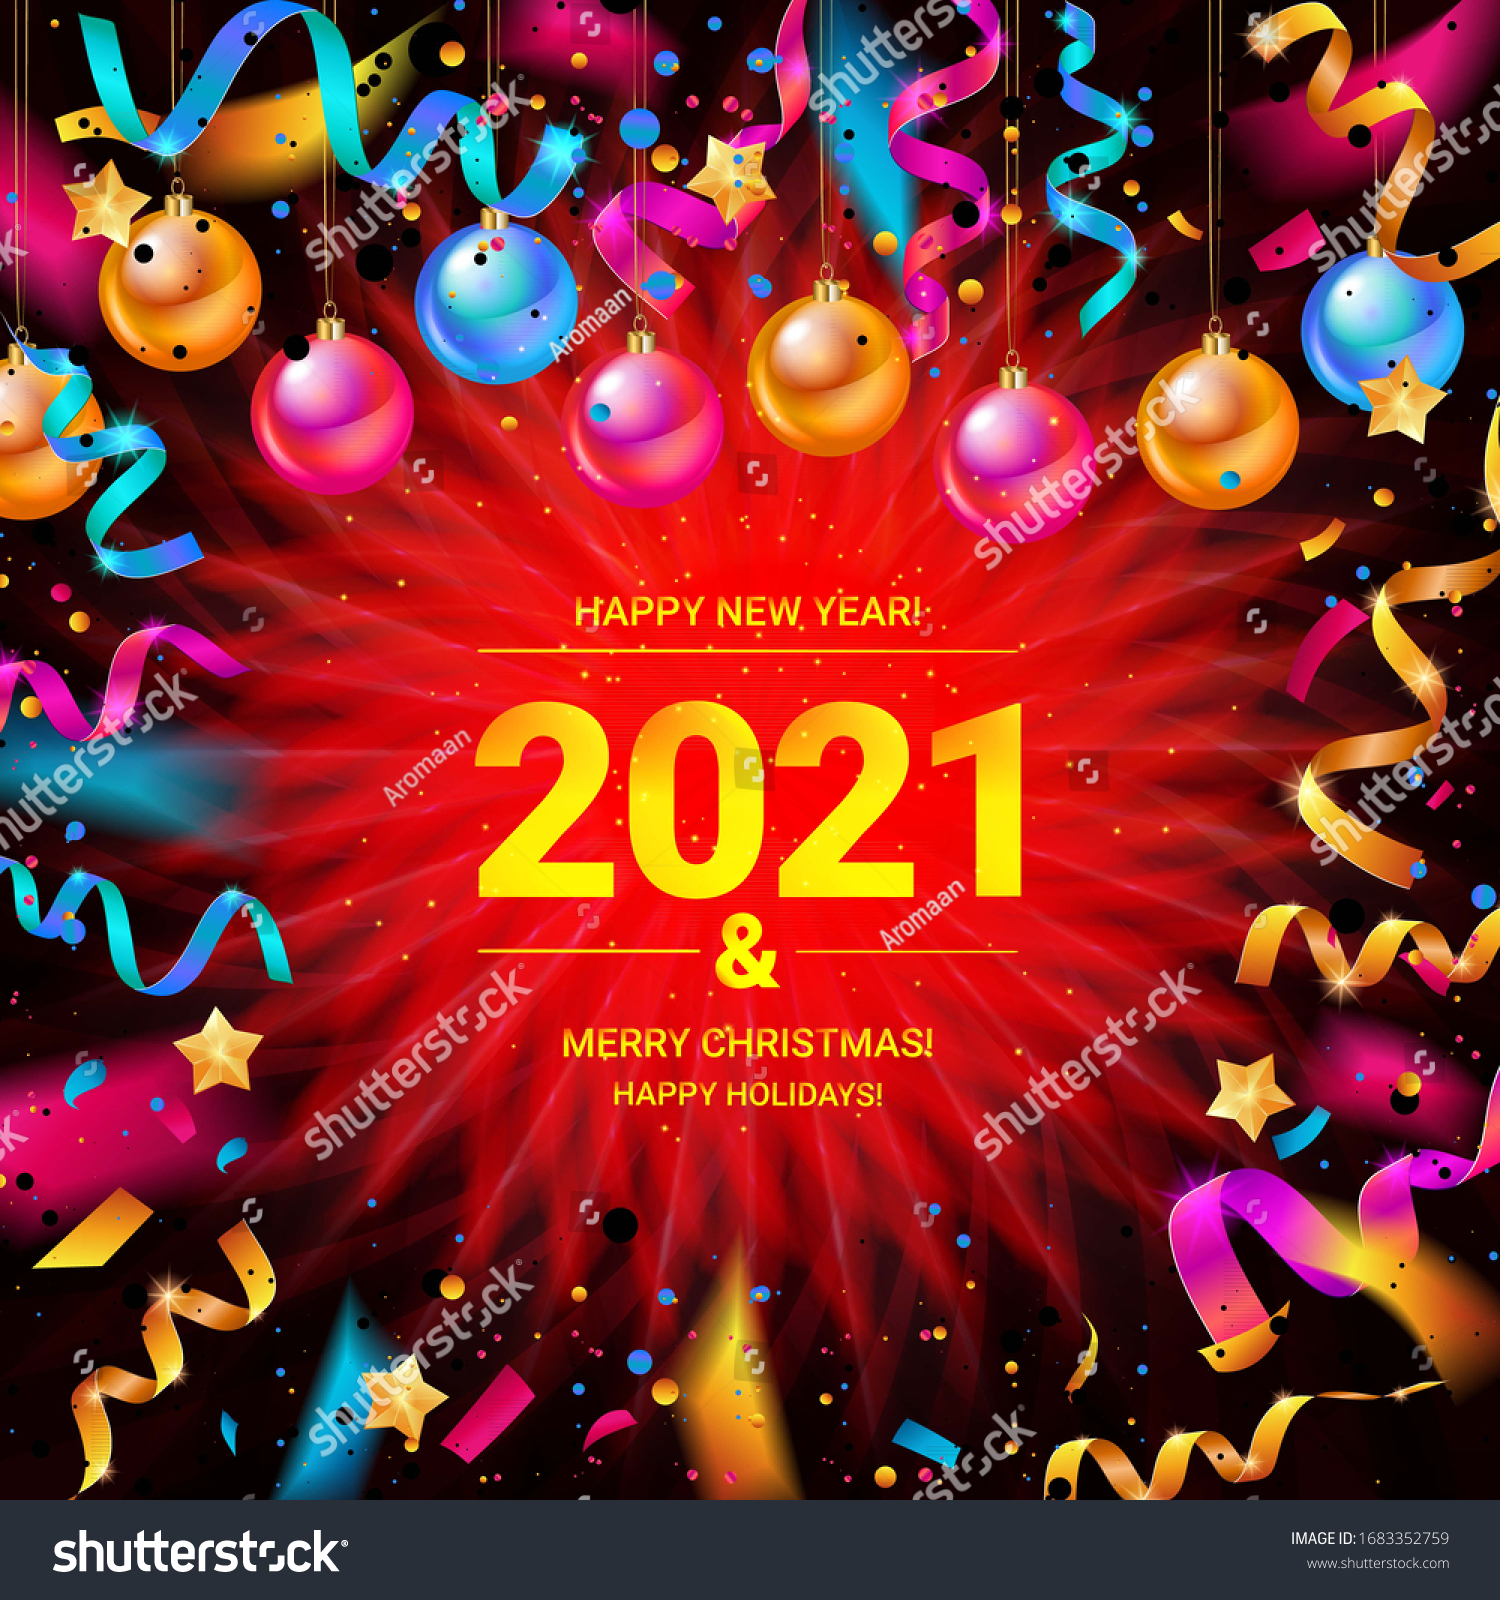 27+ Christmas Lights Graphic 2021